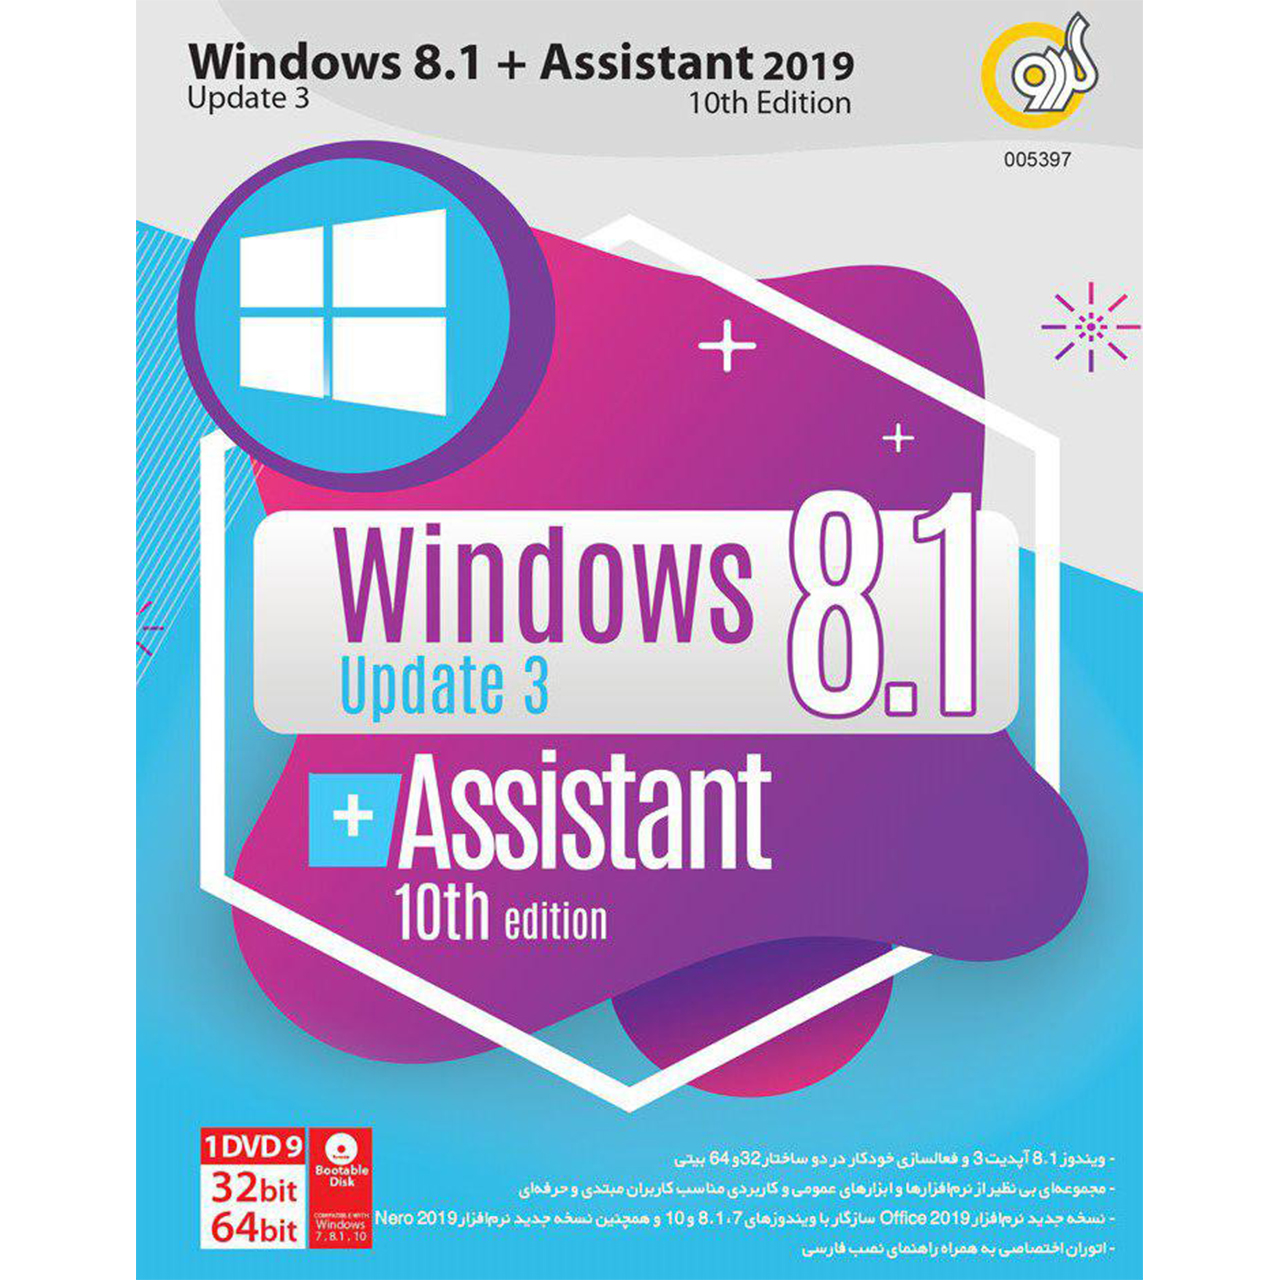 سیستم عامل ویندوز گردو Windows 8.1 Update3 + Assistant 10th Edition 2019